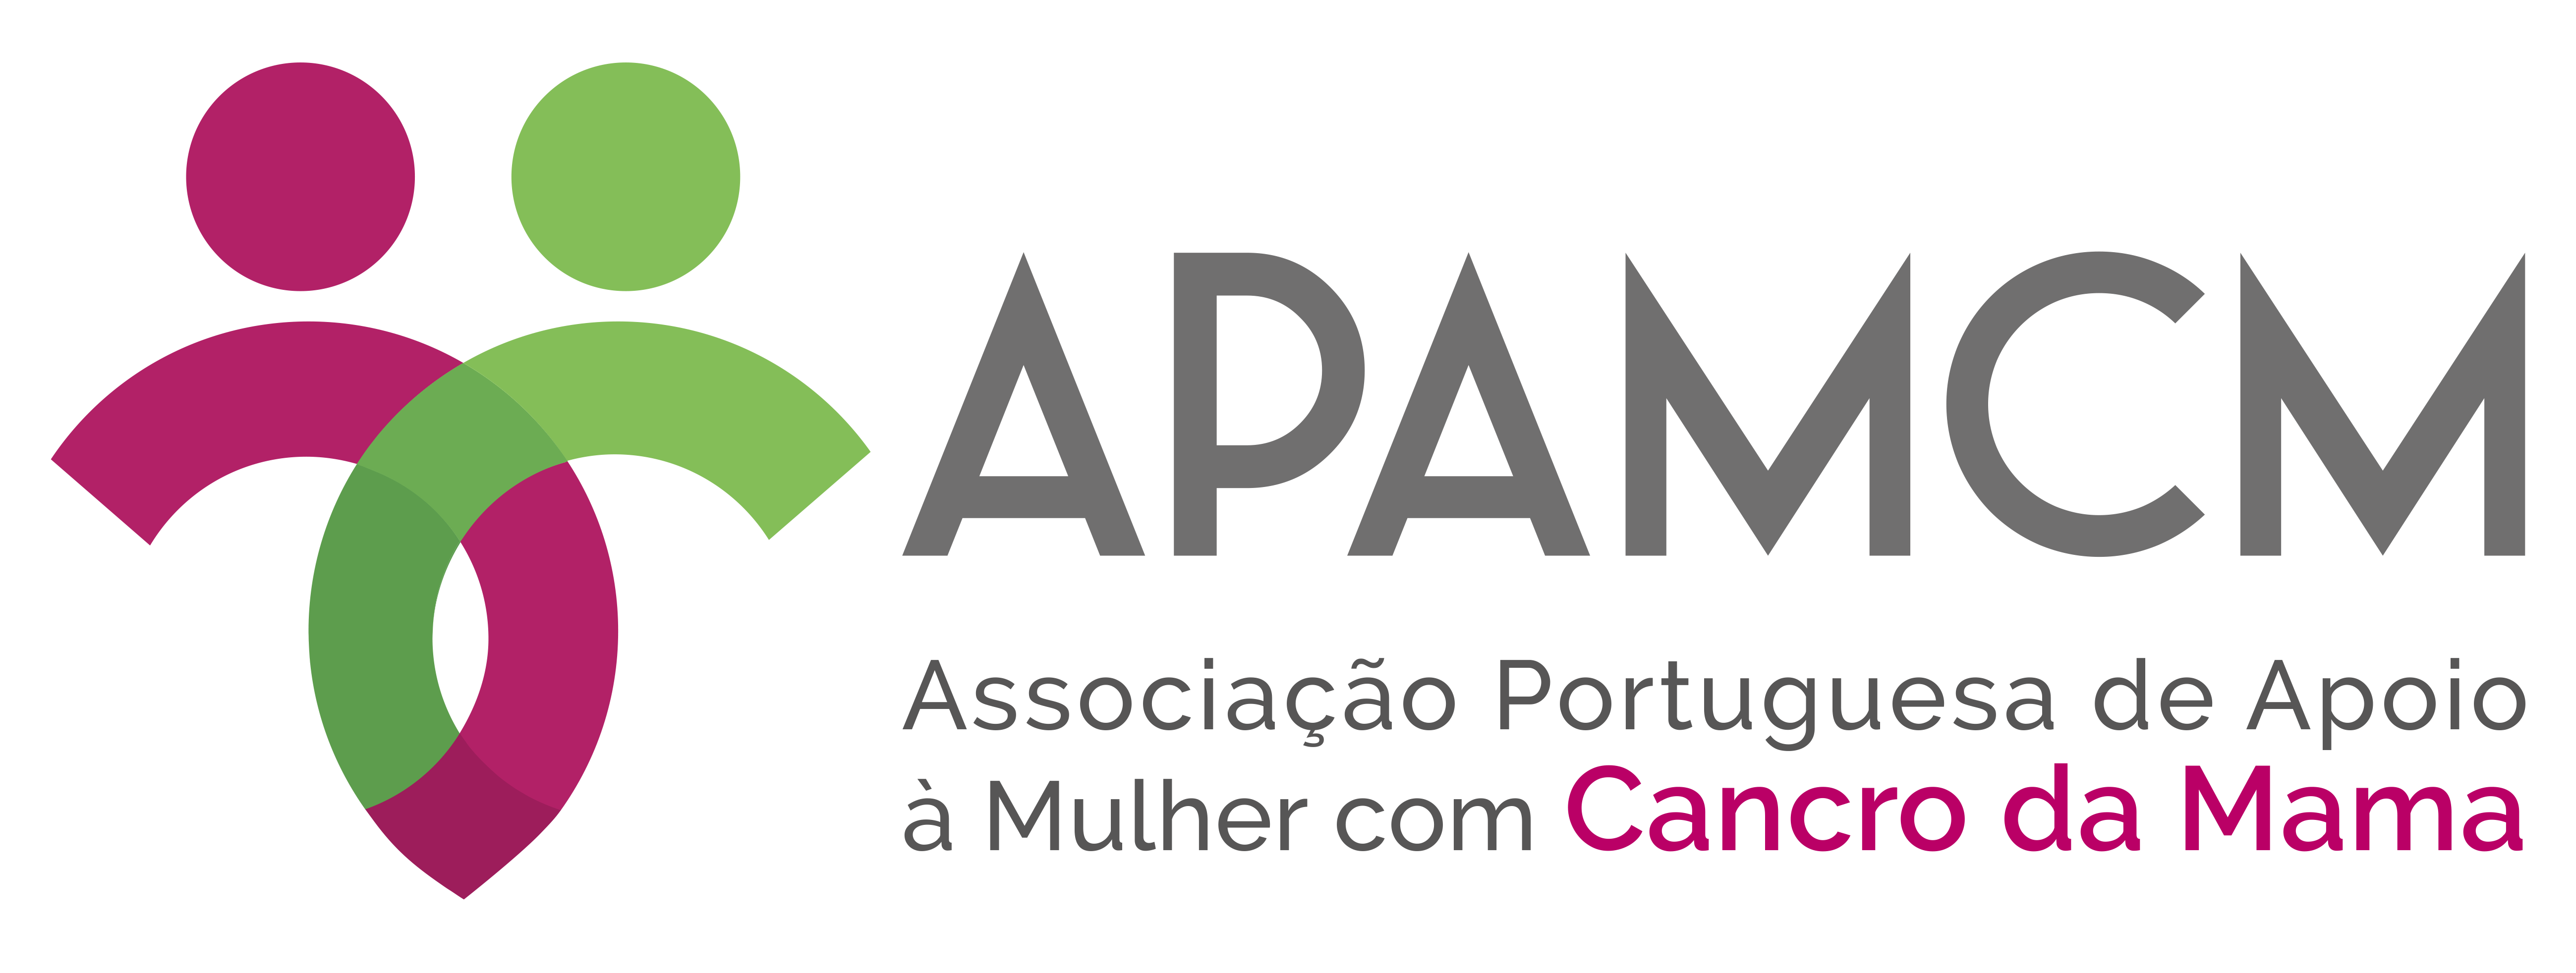 Logotipo APAMCM